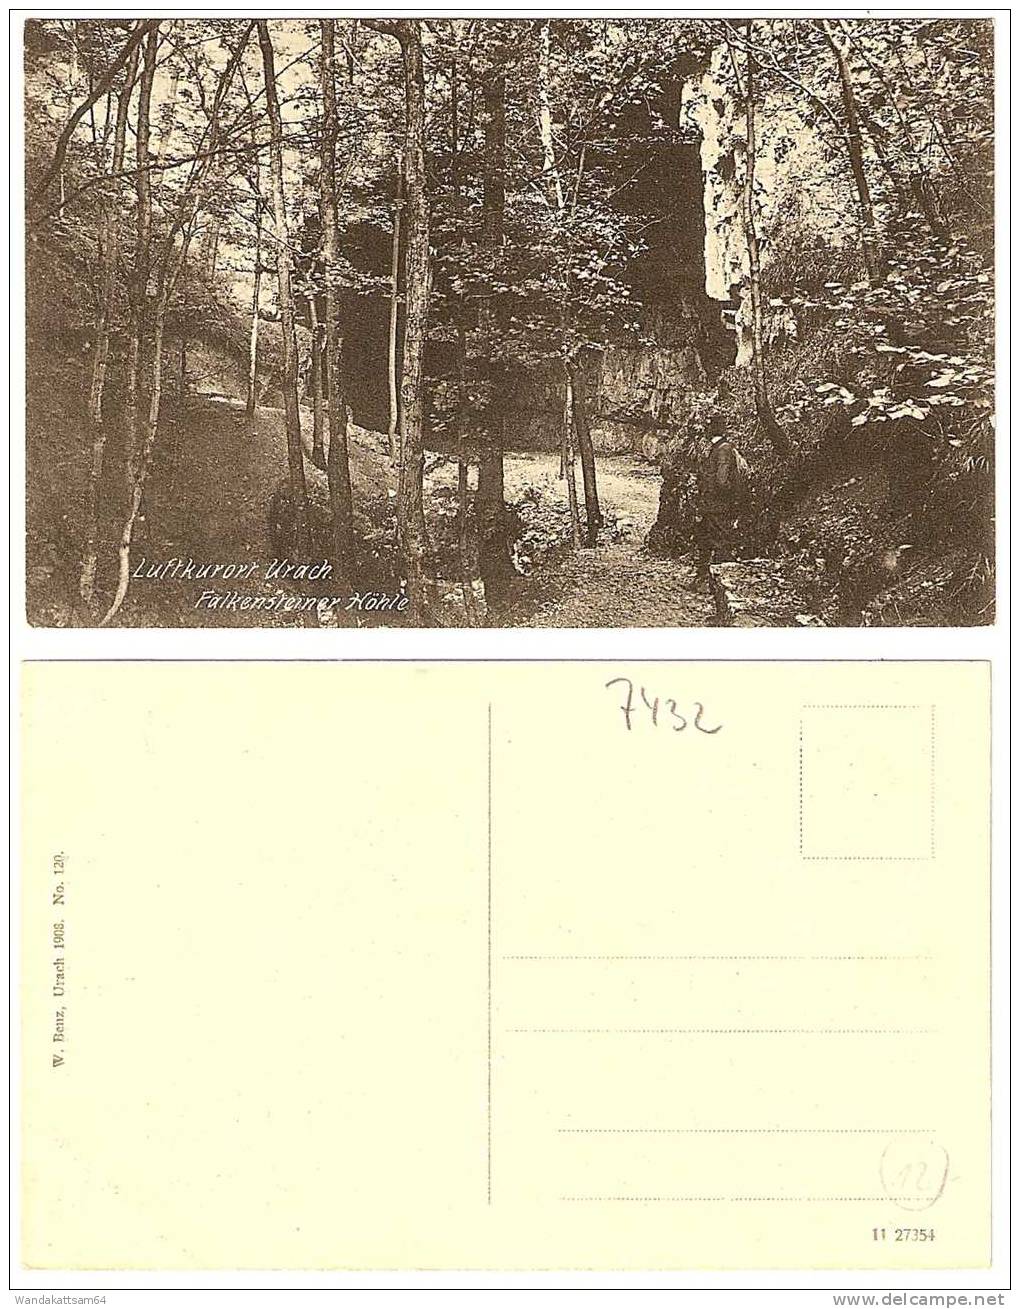 AK Luftkurort Urach. Falkensteiner Höhle W. Benz, Urach 1908. No. 120. - Bad Urach